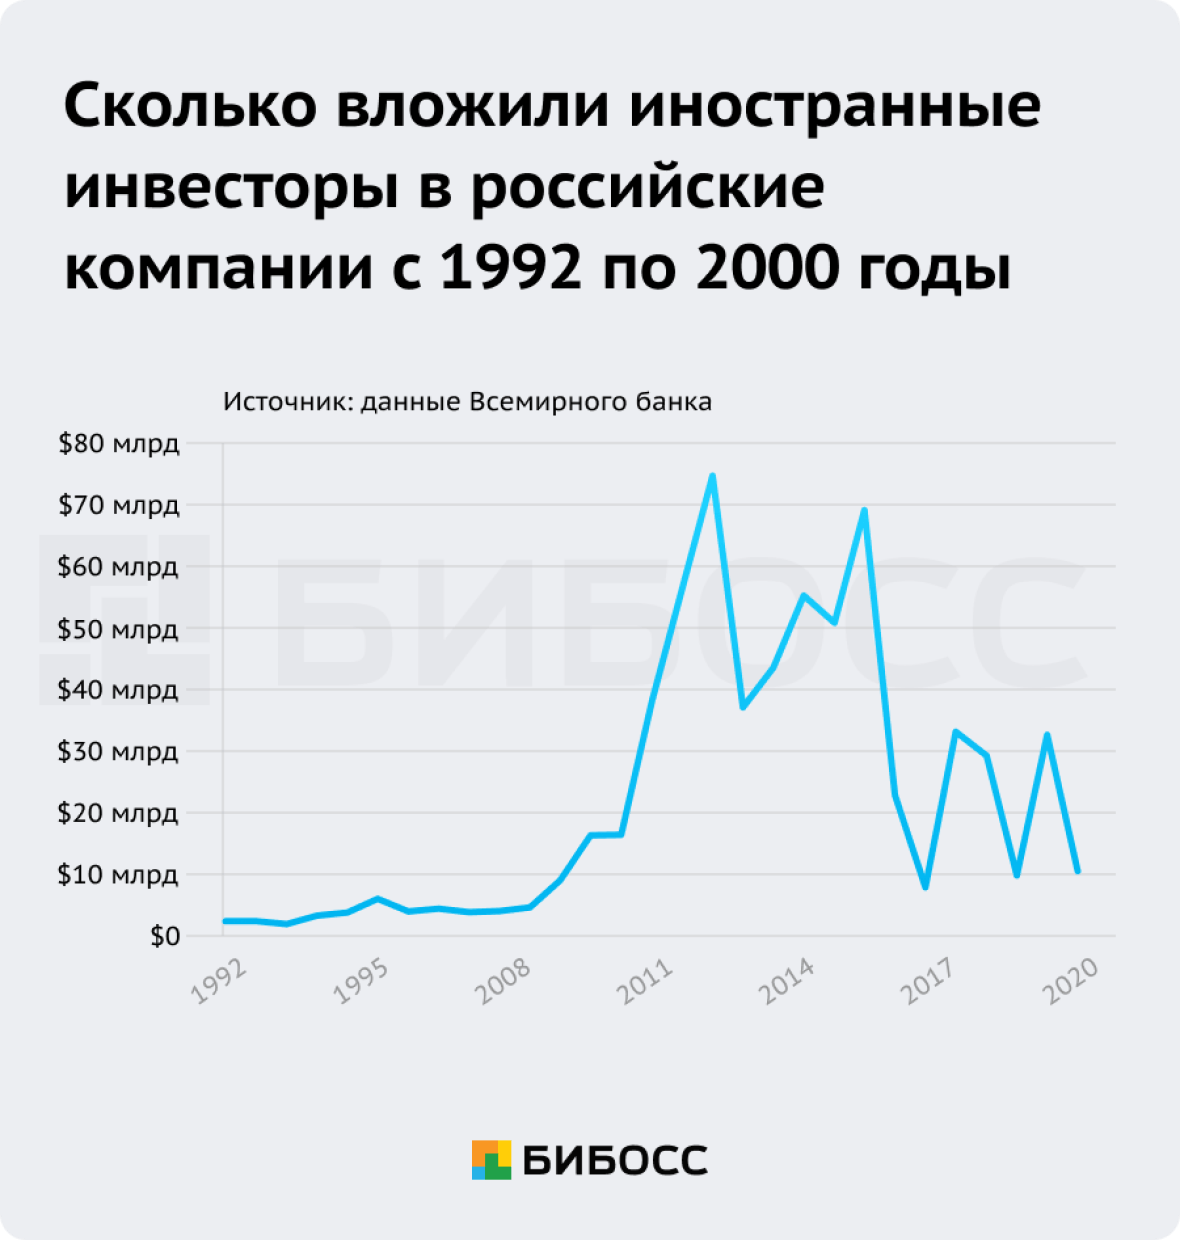 Объем иностранных инвестиций в Российские компании за последние 30 лет